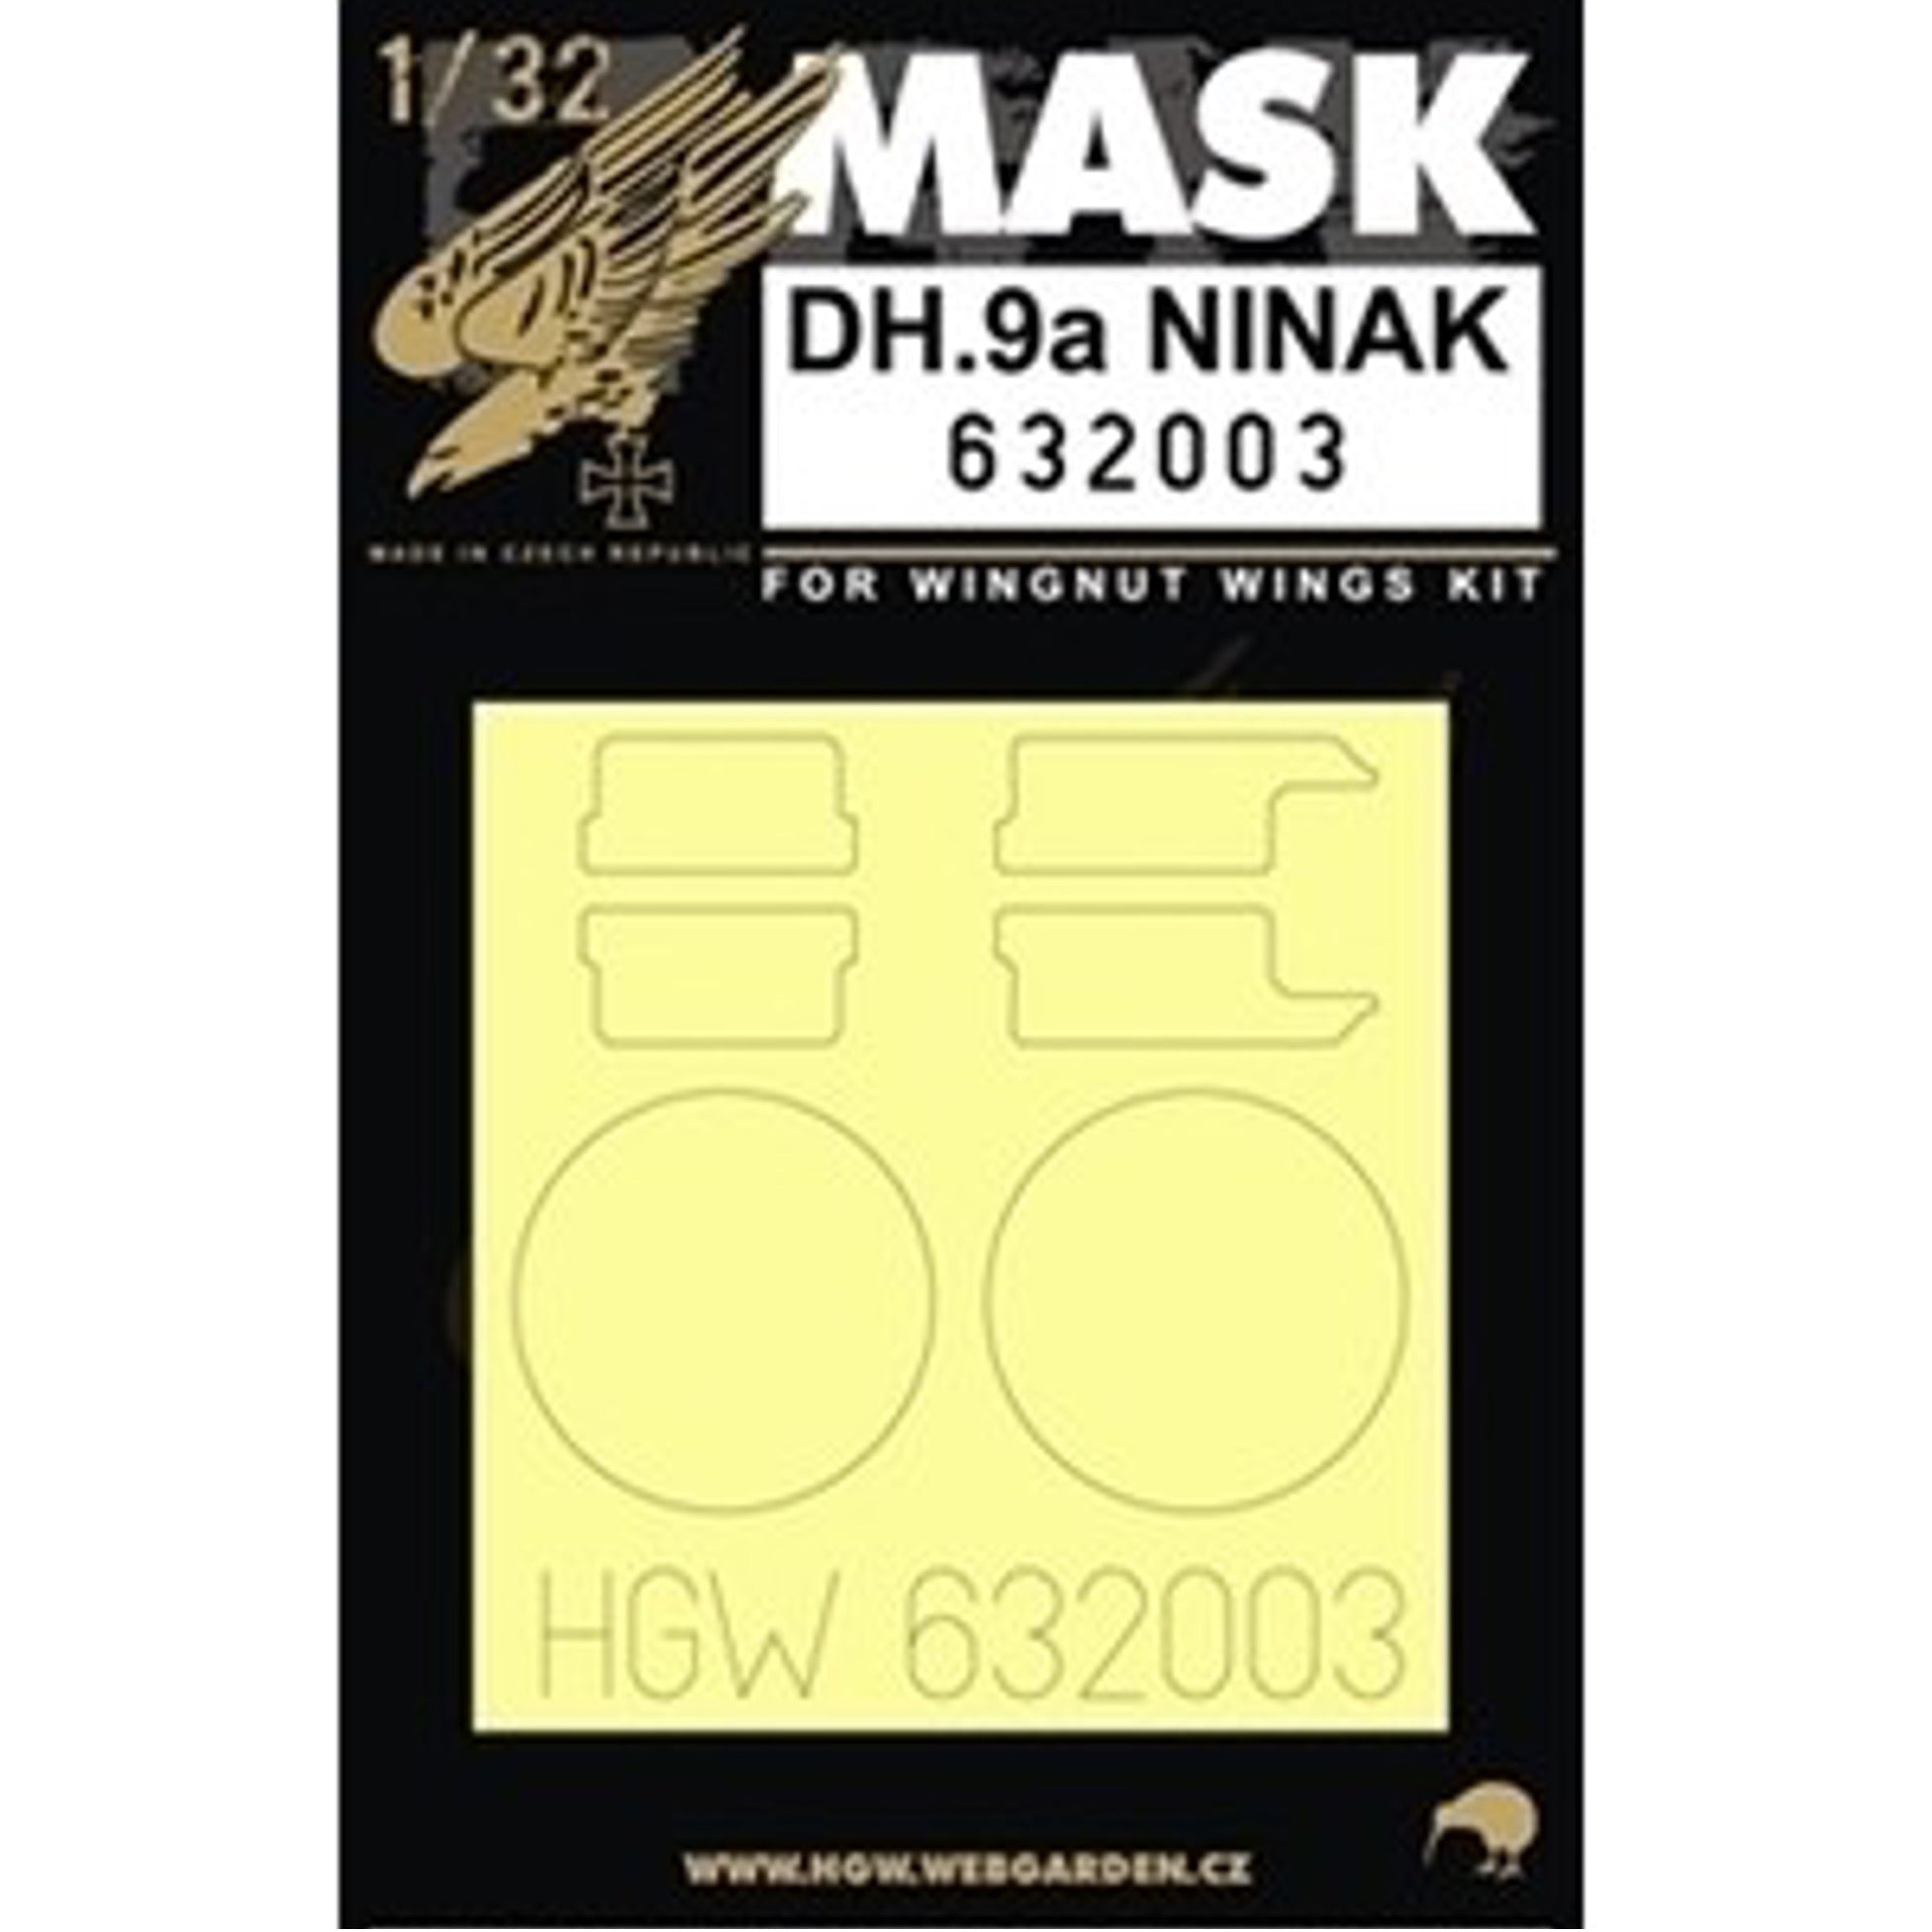 1/32 - Masks - DH.9a Ninak